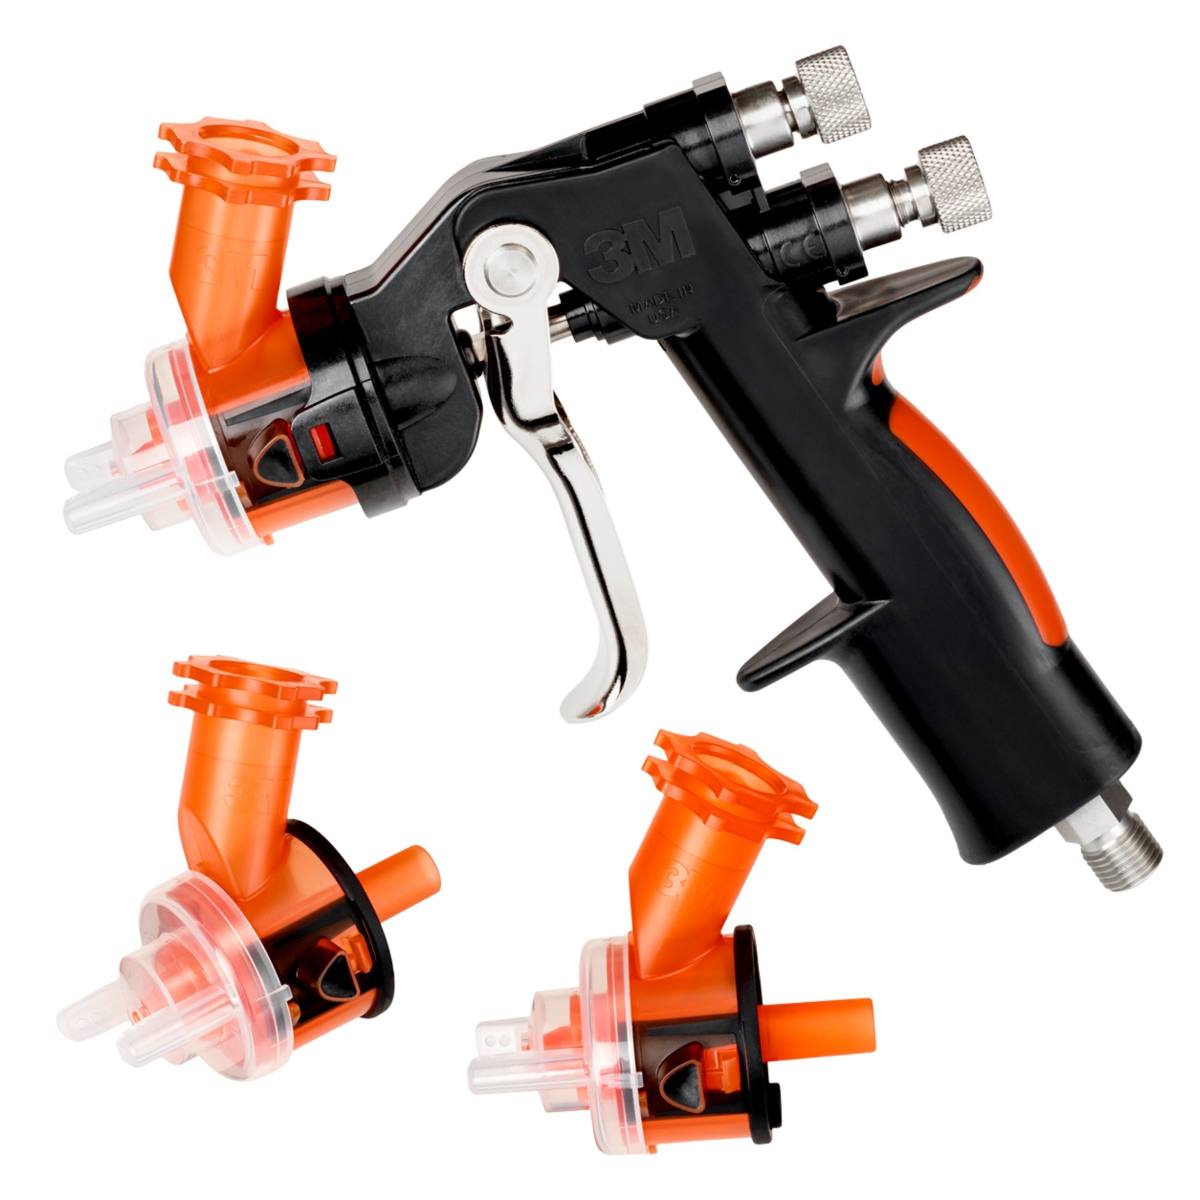 3M Accuspray gun HG14, packaging contents: 1x gun, 3x nozzle heads 1.4mm orange 16612, 1x pressure gauge #16577